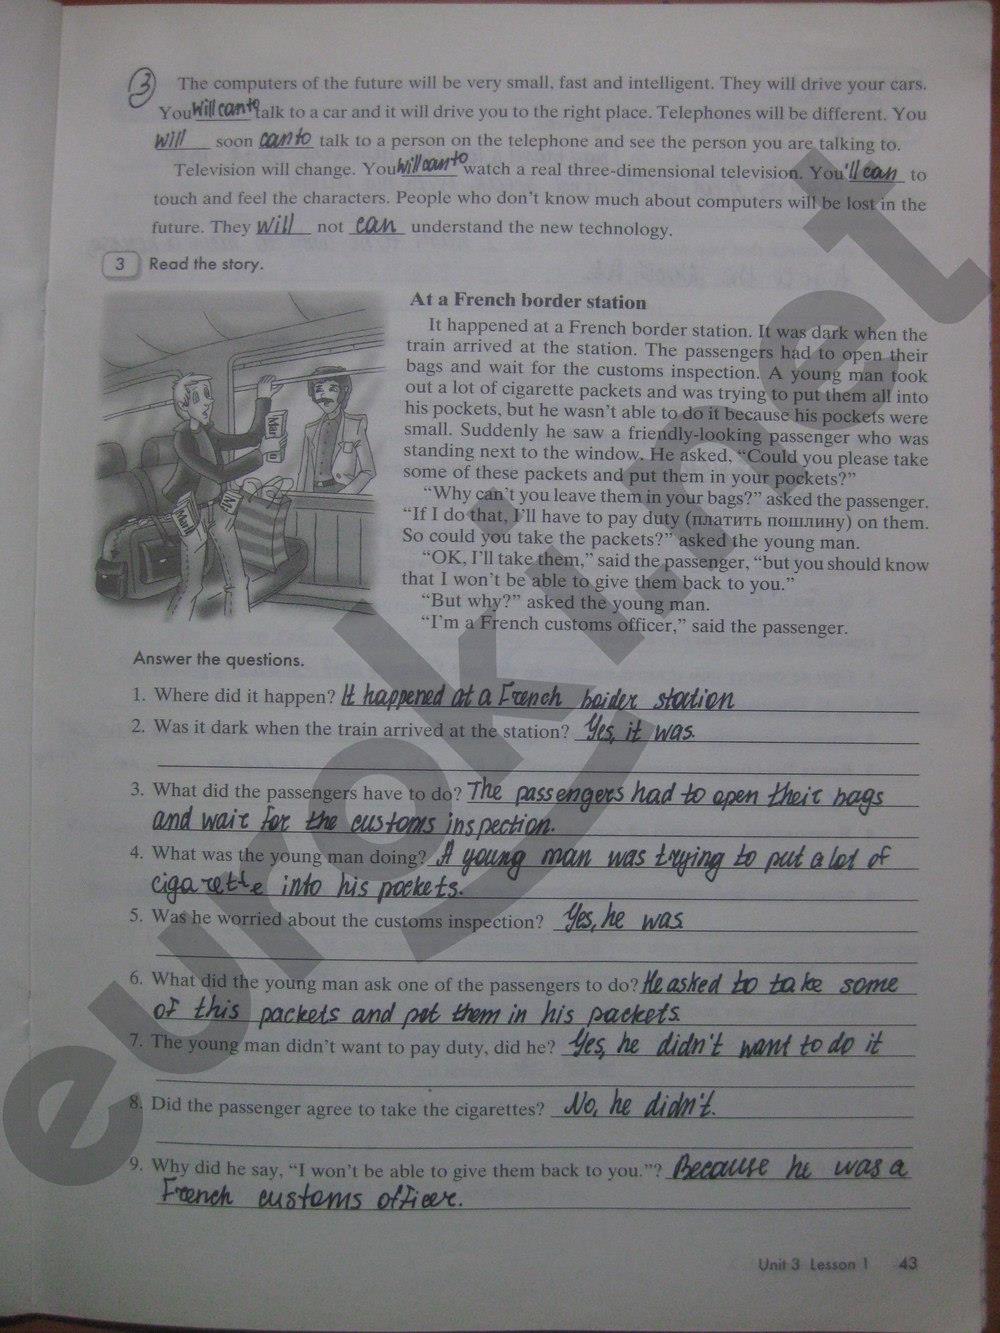 гдз 8 класс рабочая тетрадь часть 1 страница 43 английский язык Кауфман